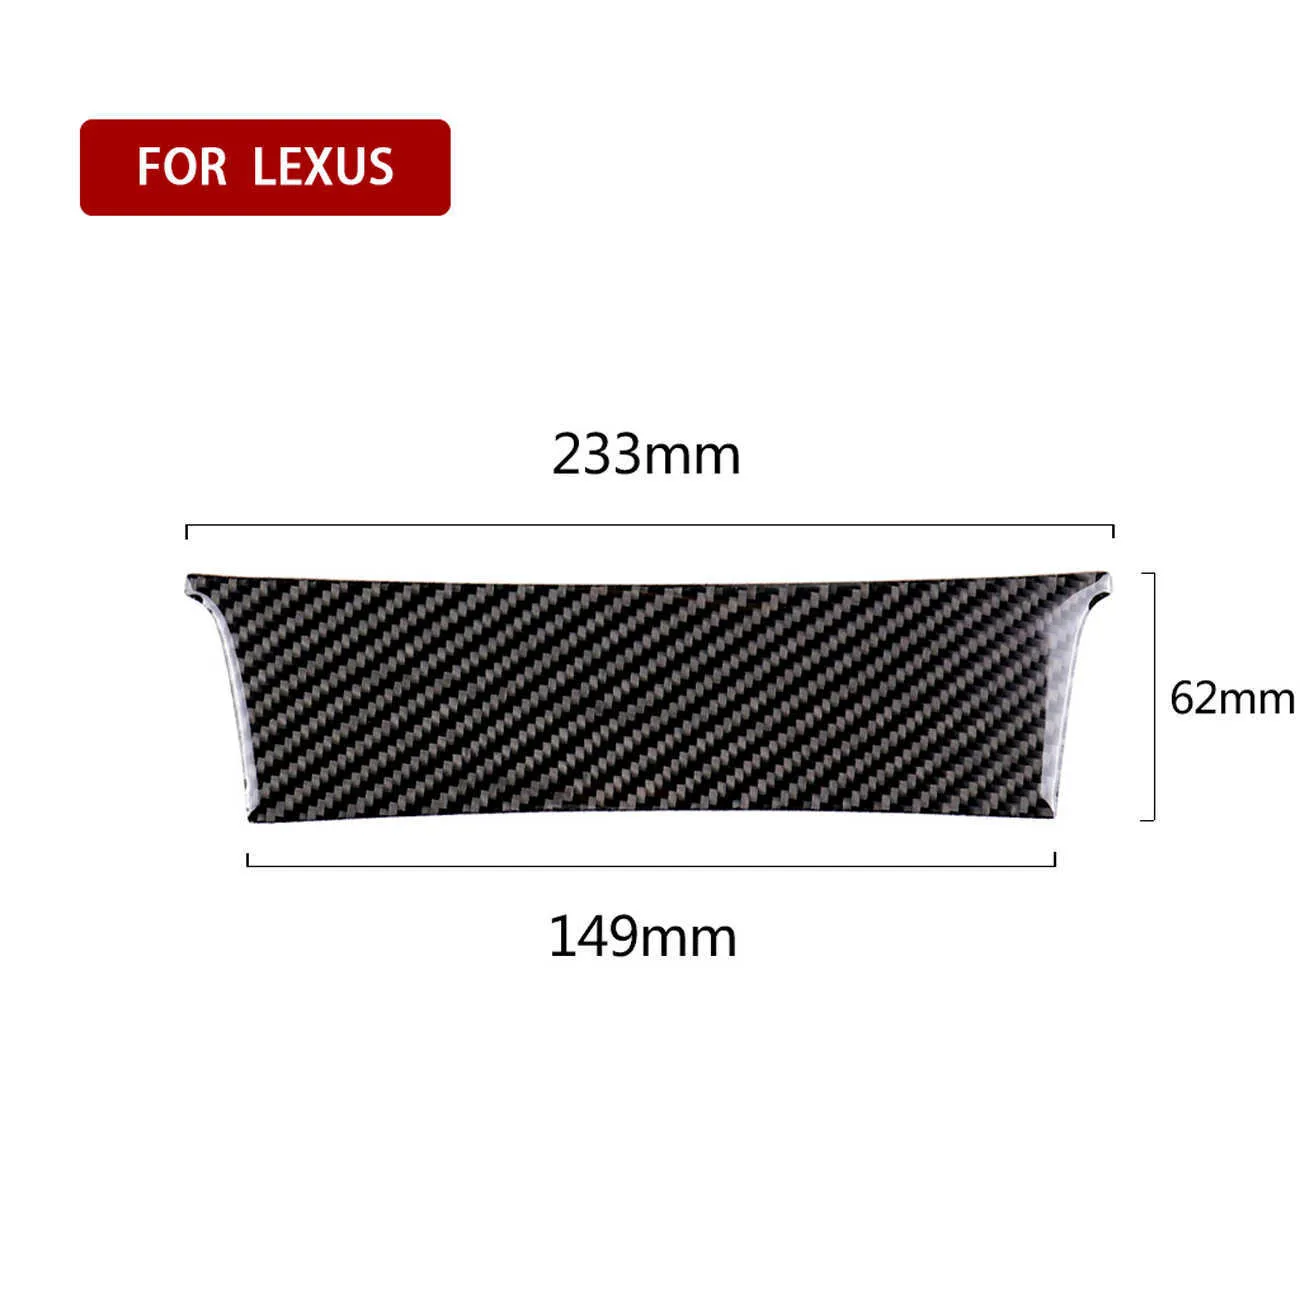 Blask Carbon Fiber Control Panel Przechowywanie wklejone Wnętrze Akcesoria samochodowe Stylizacja wnętrza dla Lexusa IS250 2013-2020